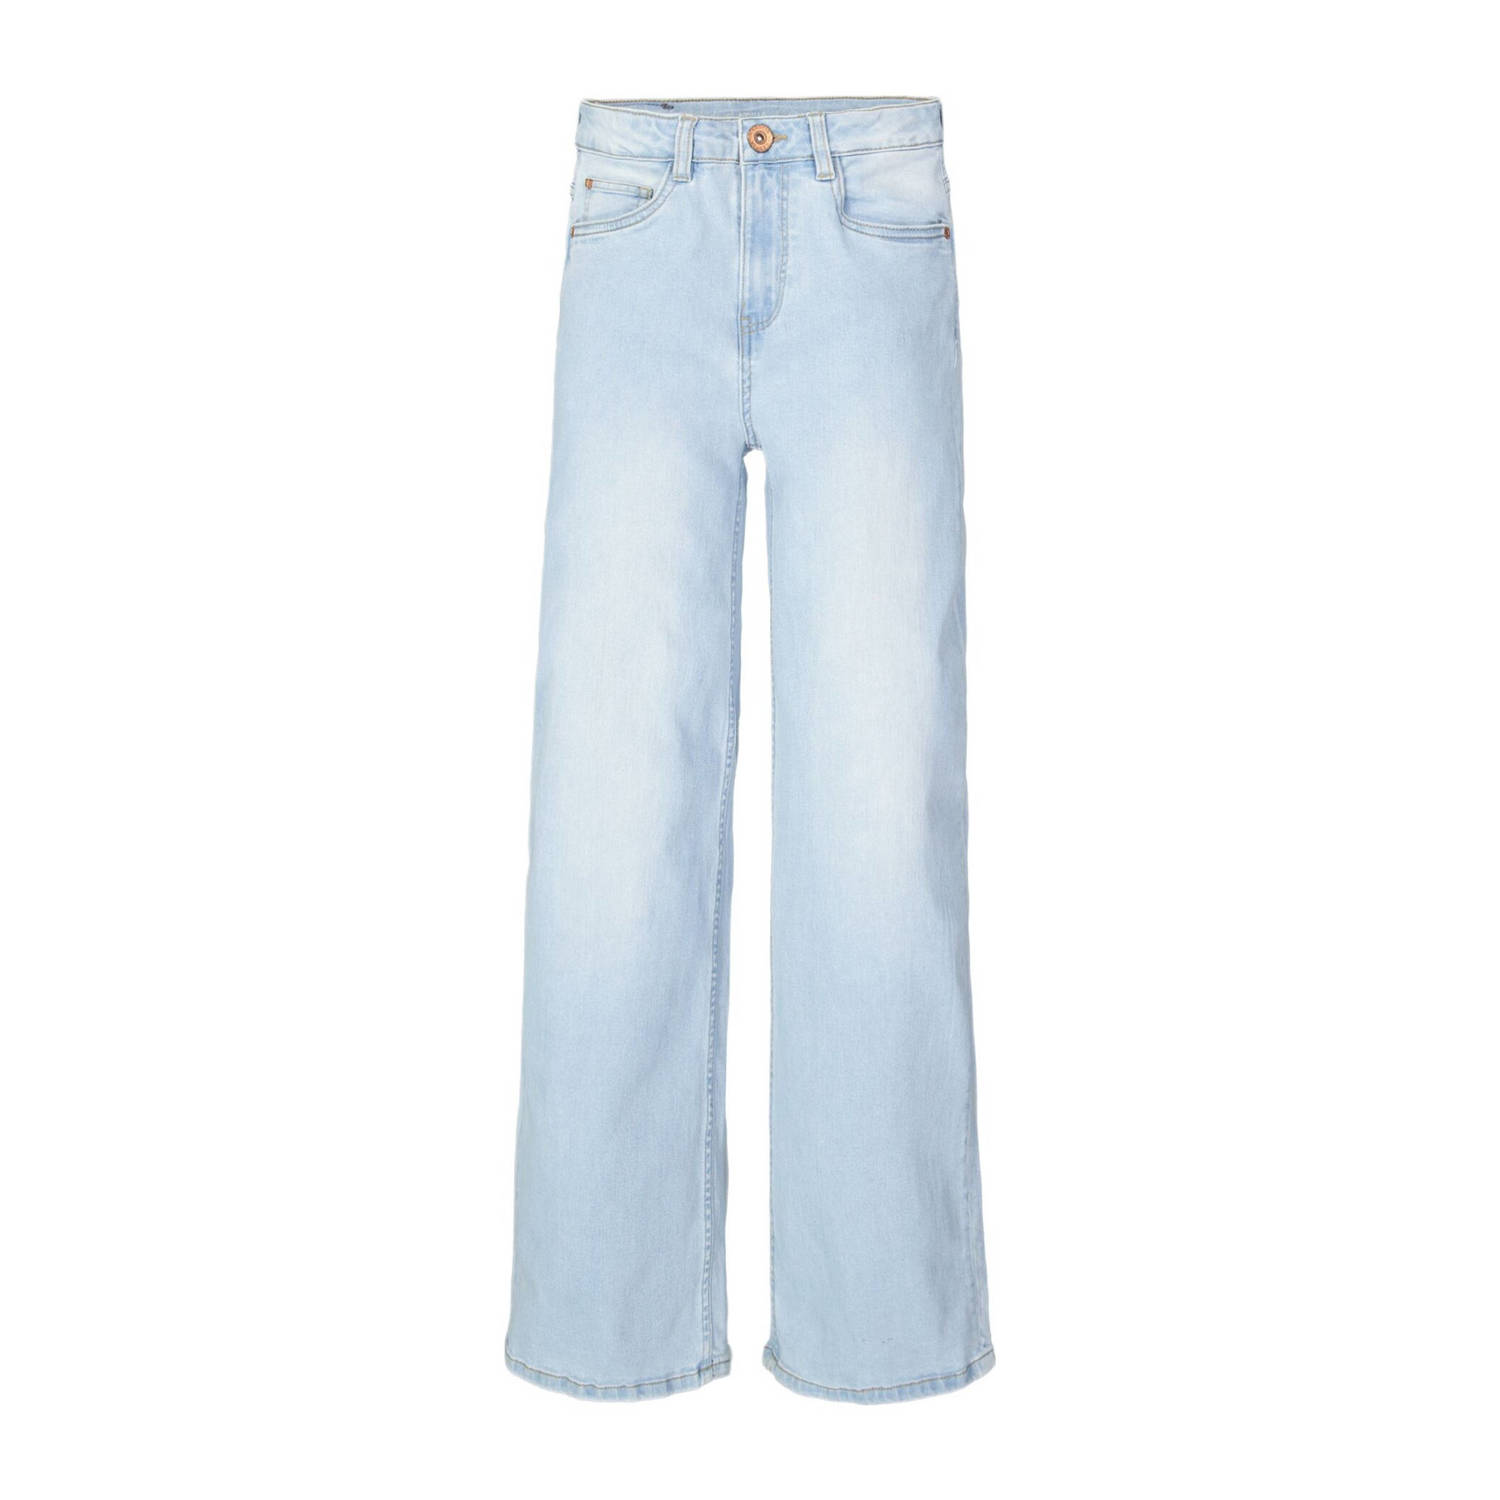 Garcia high waist wide leg jeans Annemay bleached Blauw Meisjes Stretchdenim 140